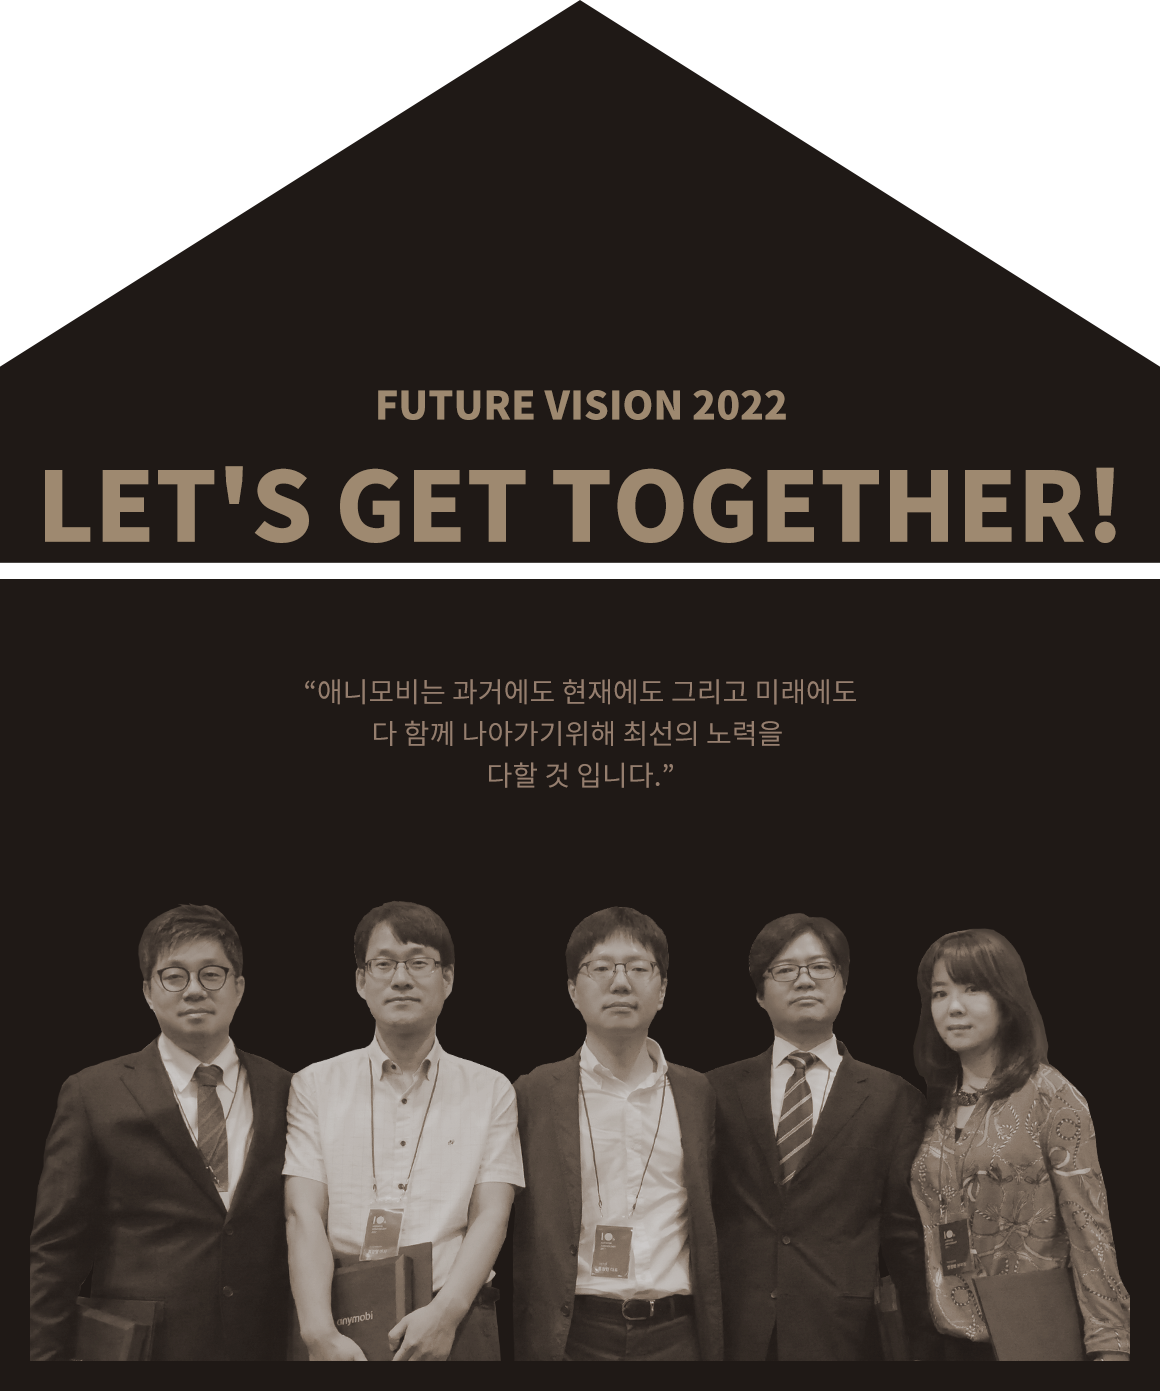 Future Vision 2022. Let's get together!